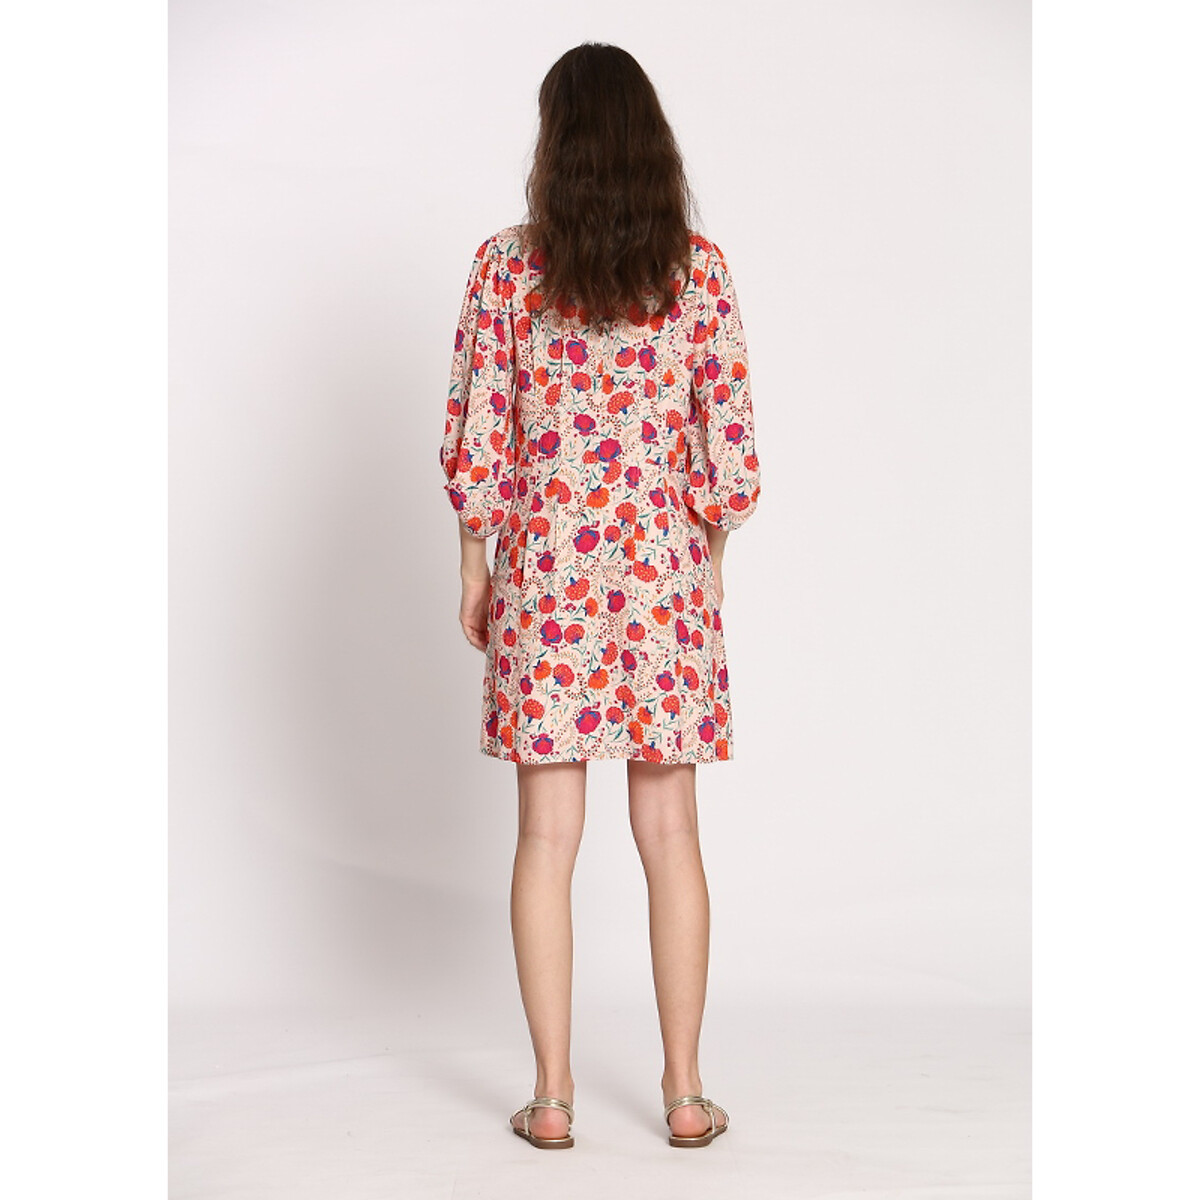 Платье Короткое с принтом фрукты 0(XS) розовый LaRedoute, размер 0(XS) Платье Короткое с принтом фрукты 0(XS) розовый - фото 5